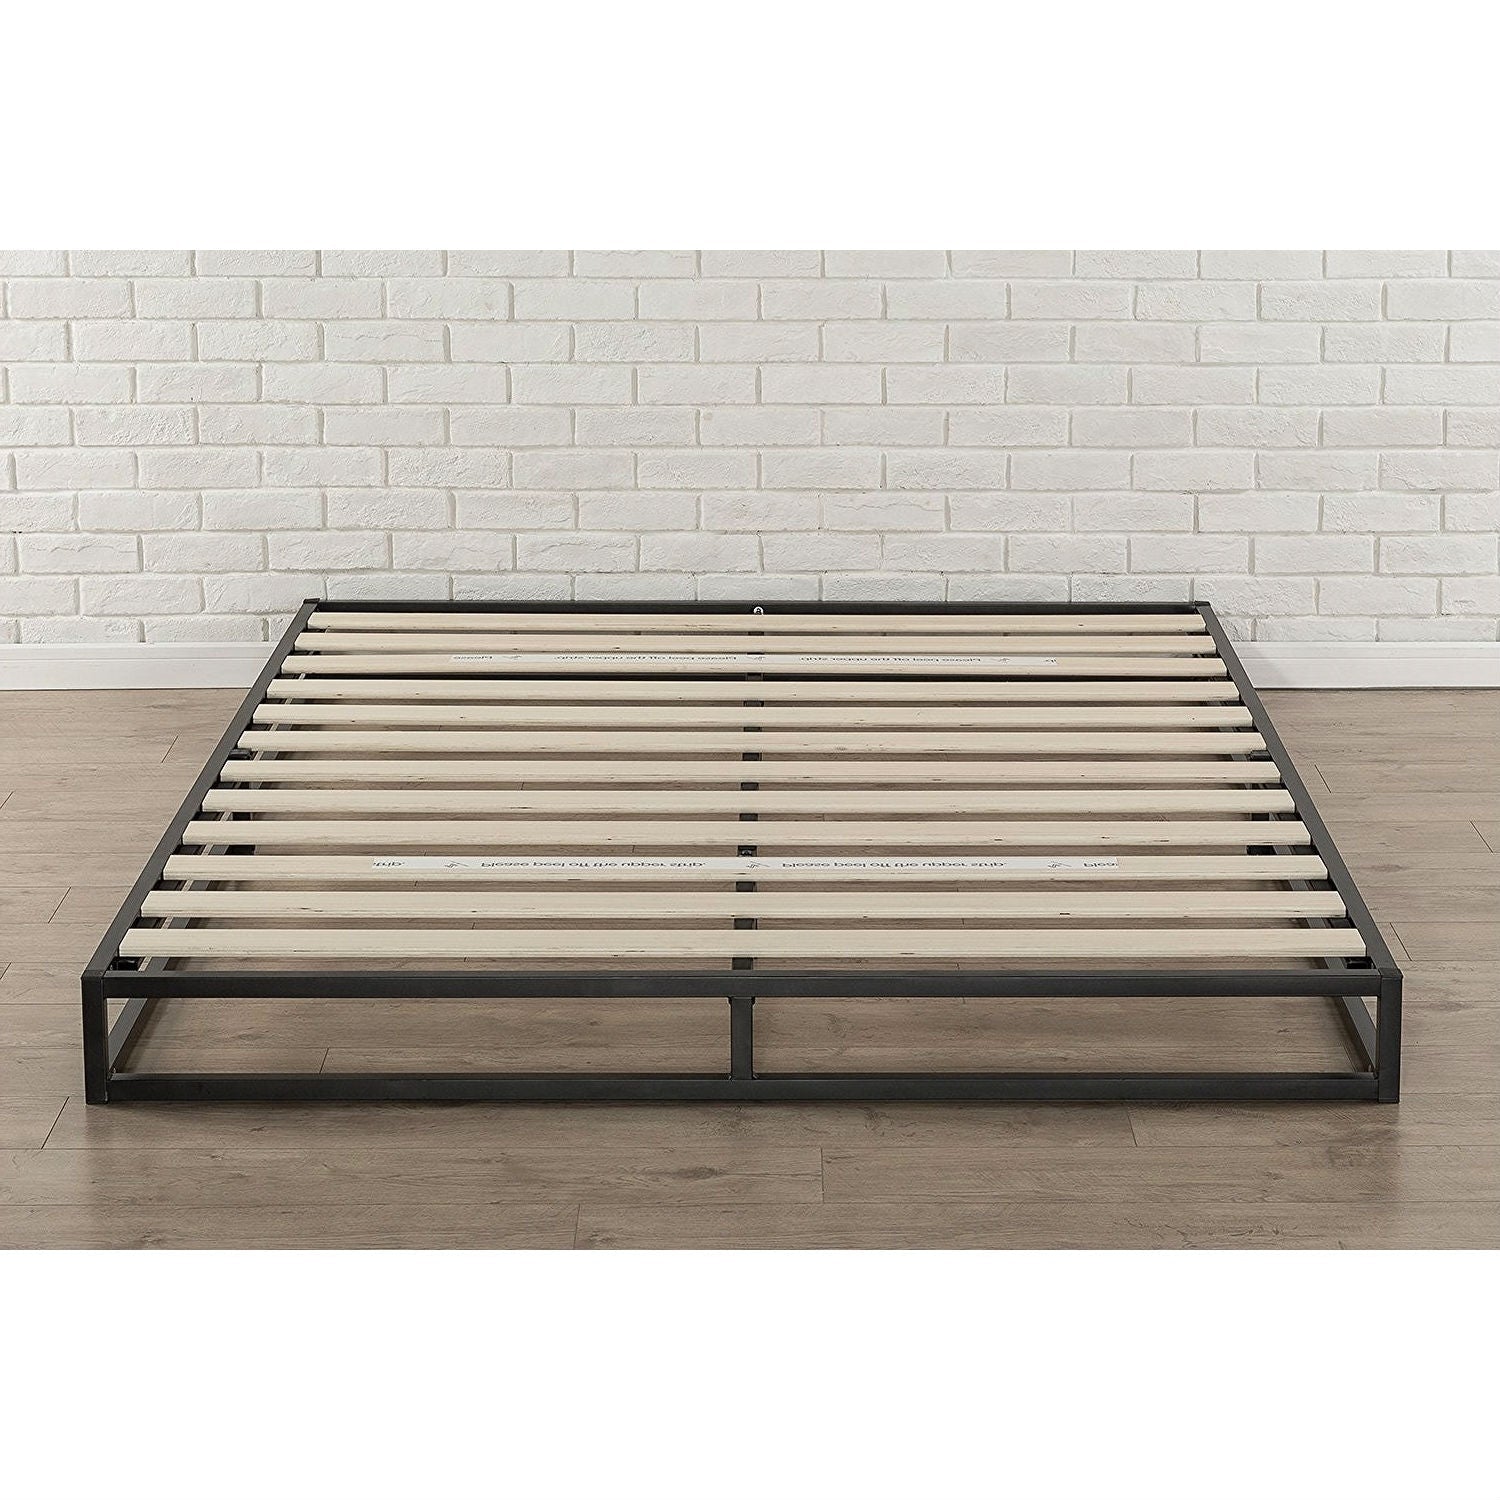 Bedroom > Bed Frames > Platform Beds - King 6-inch Low Profile Metal Platform Bed Frame With Wooden Support Slats